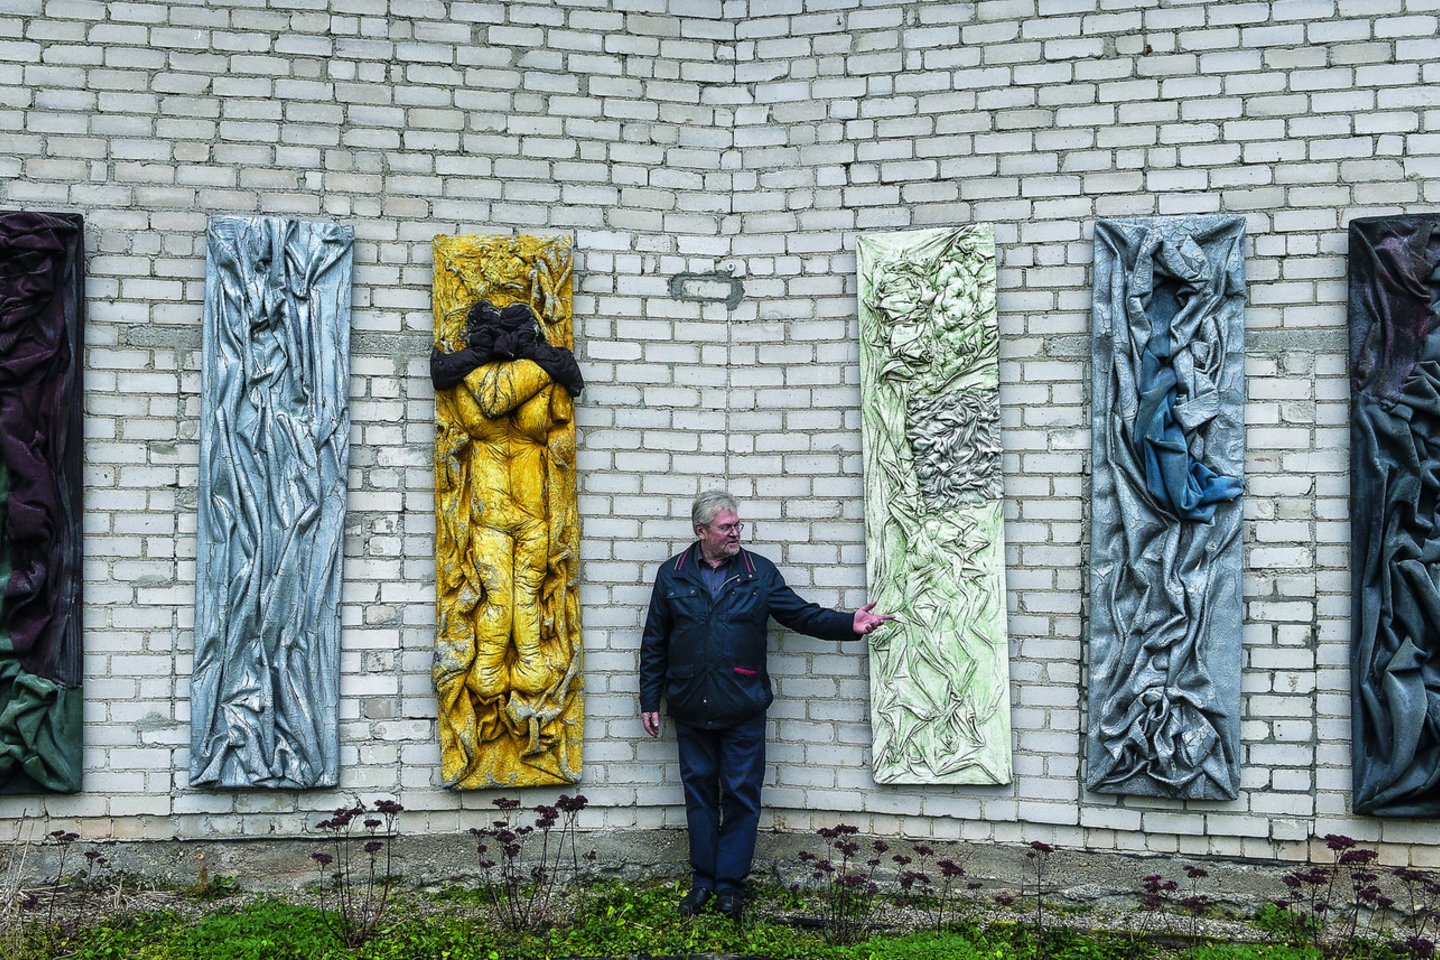 Tekstilės darbams Č.Lukenskas naudojo sovietinių laikų kiliminę dangą.